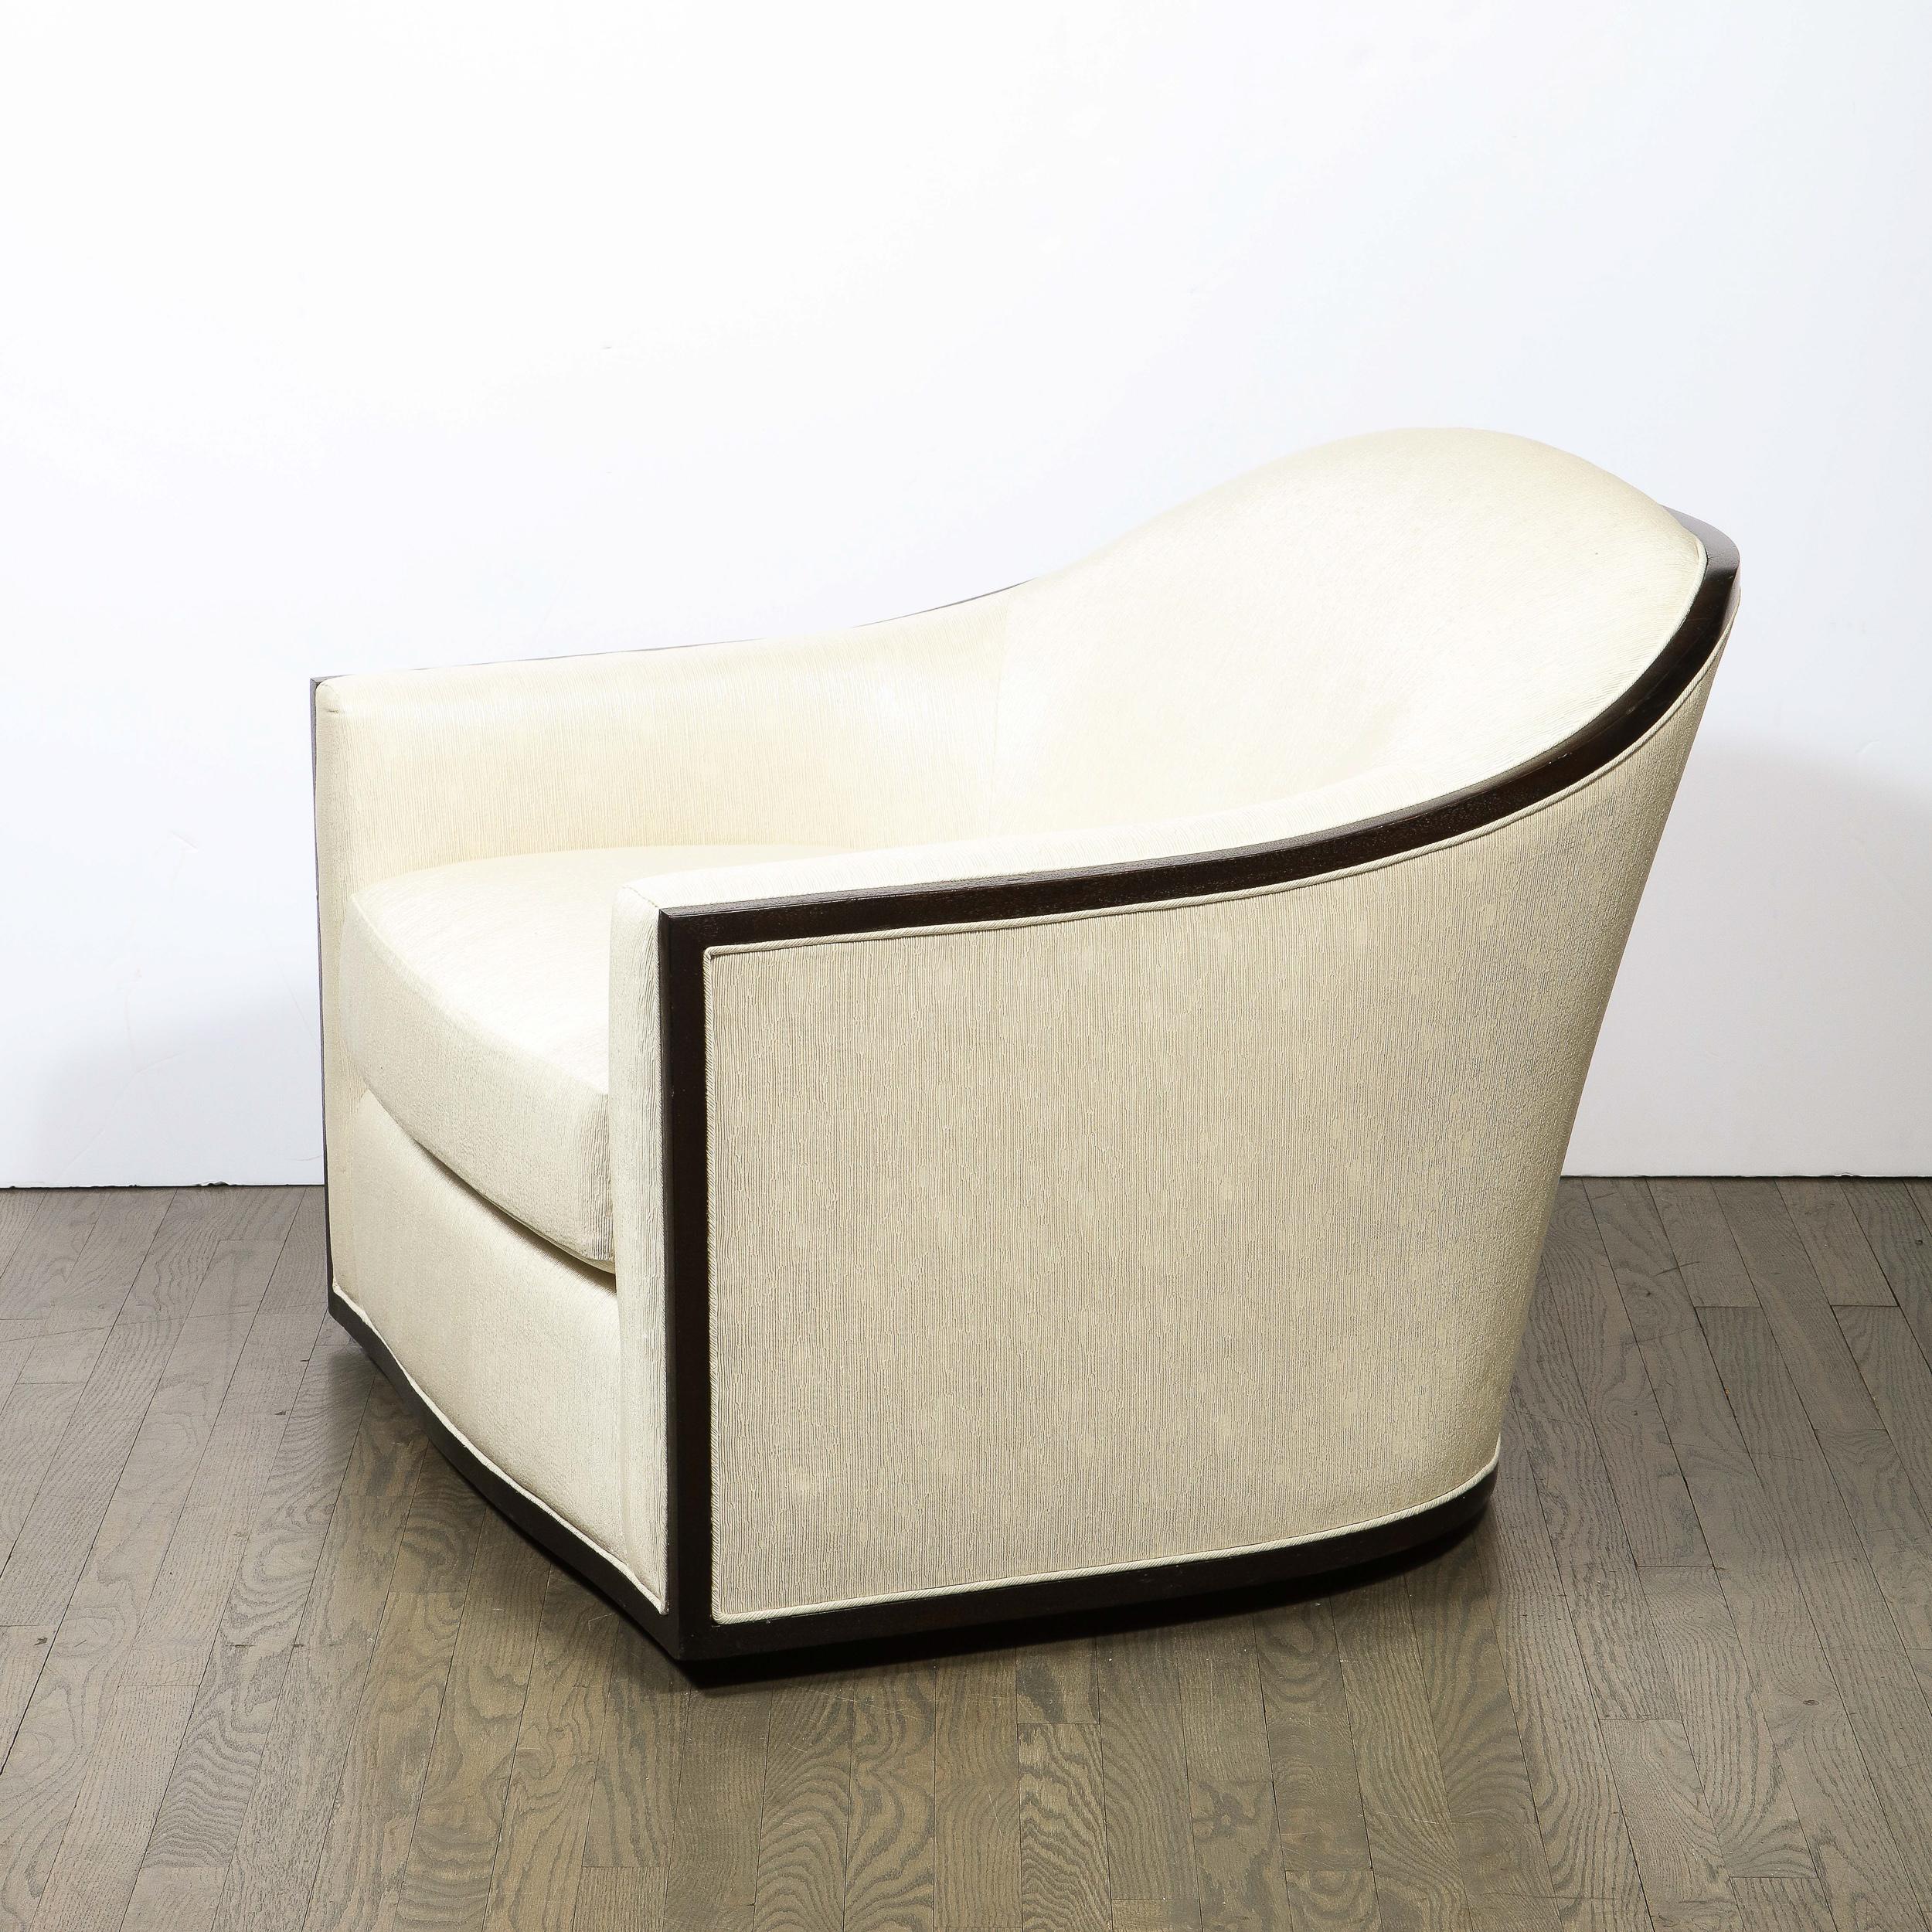 American Mid-Century Modern Ebonized Walnut Club/ Lounge Chair in Pearl Holly Hunt Fabric